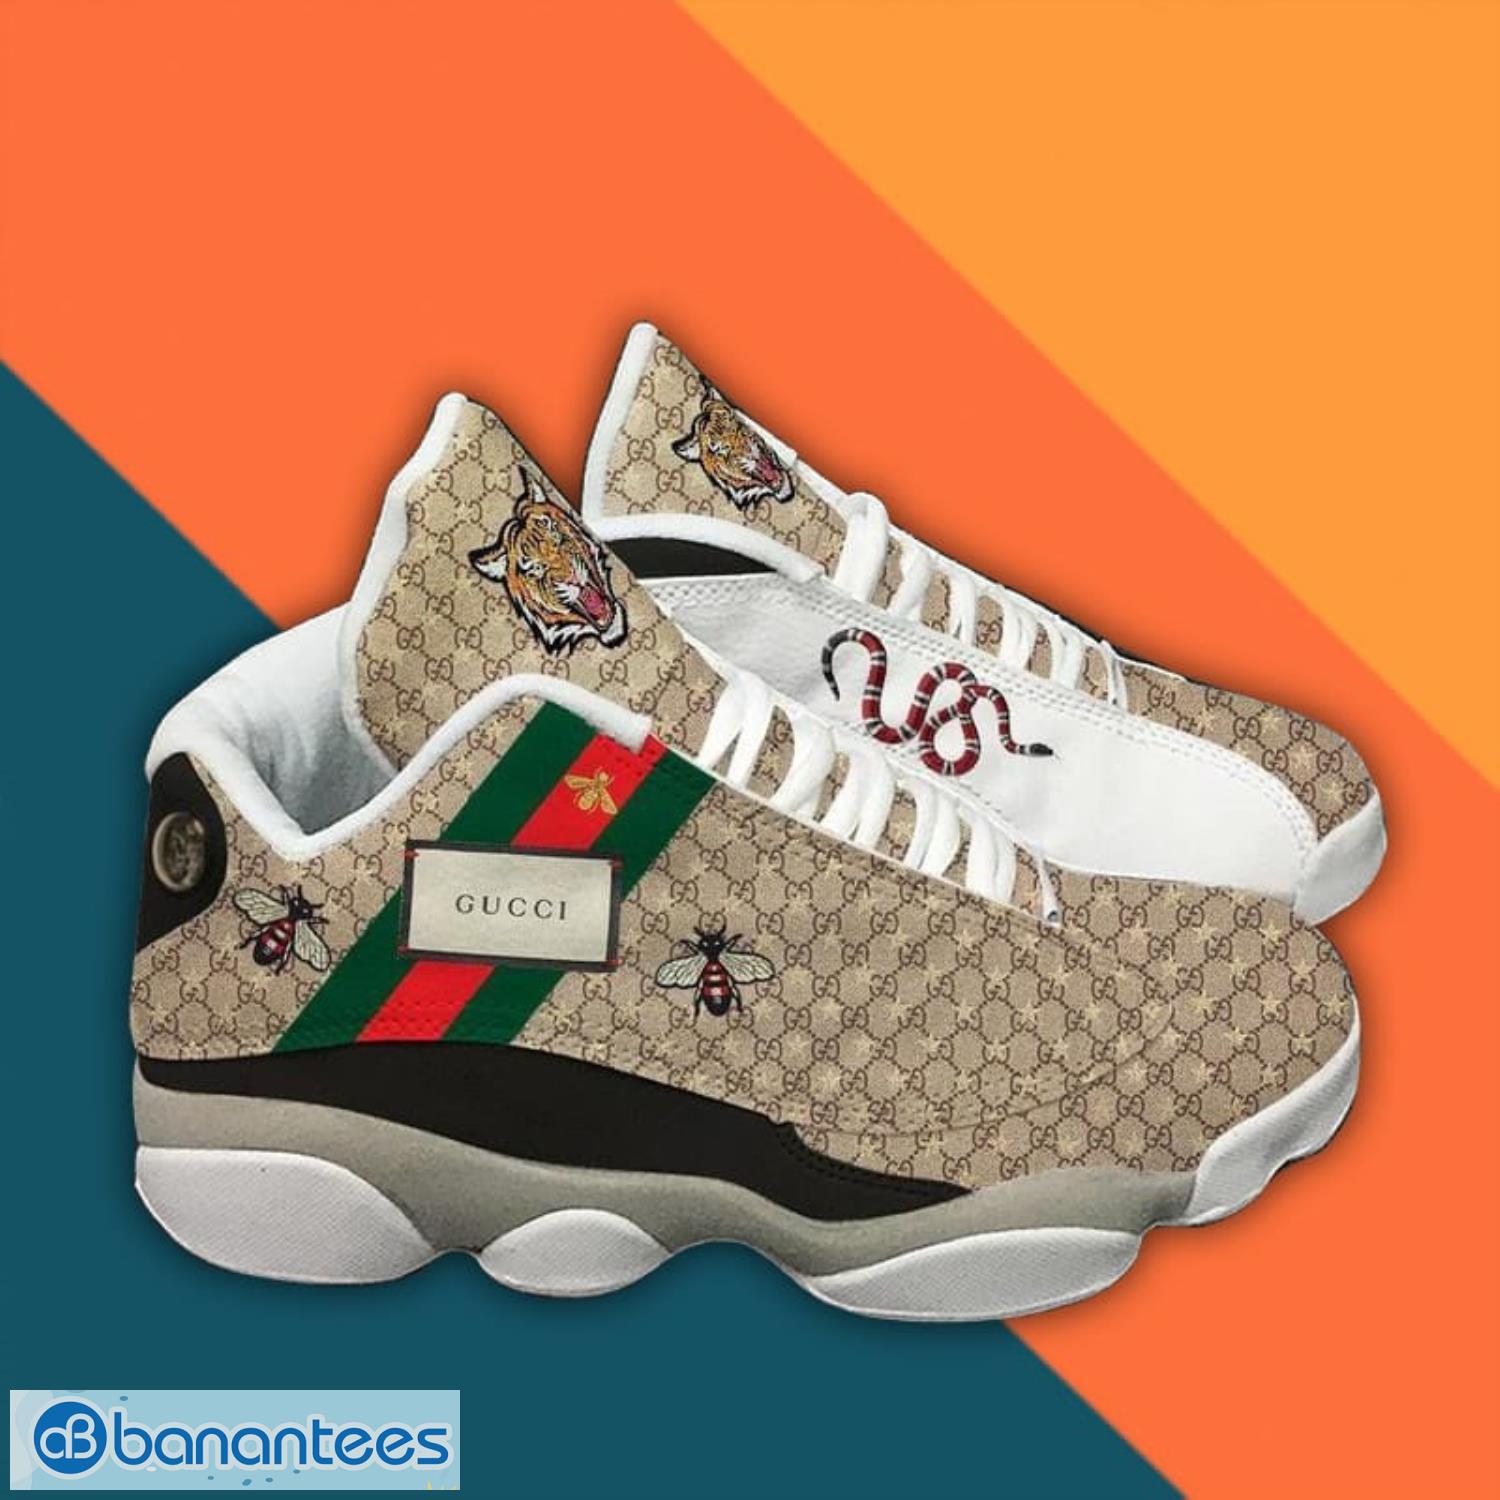 Gucci Sneaker Air Jordan 13 Sneaker Shoes - Banantees